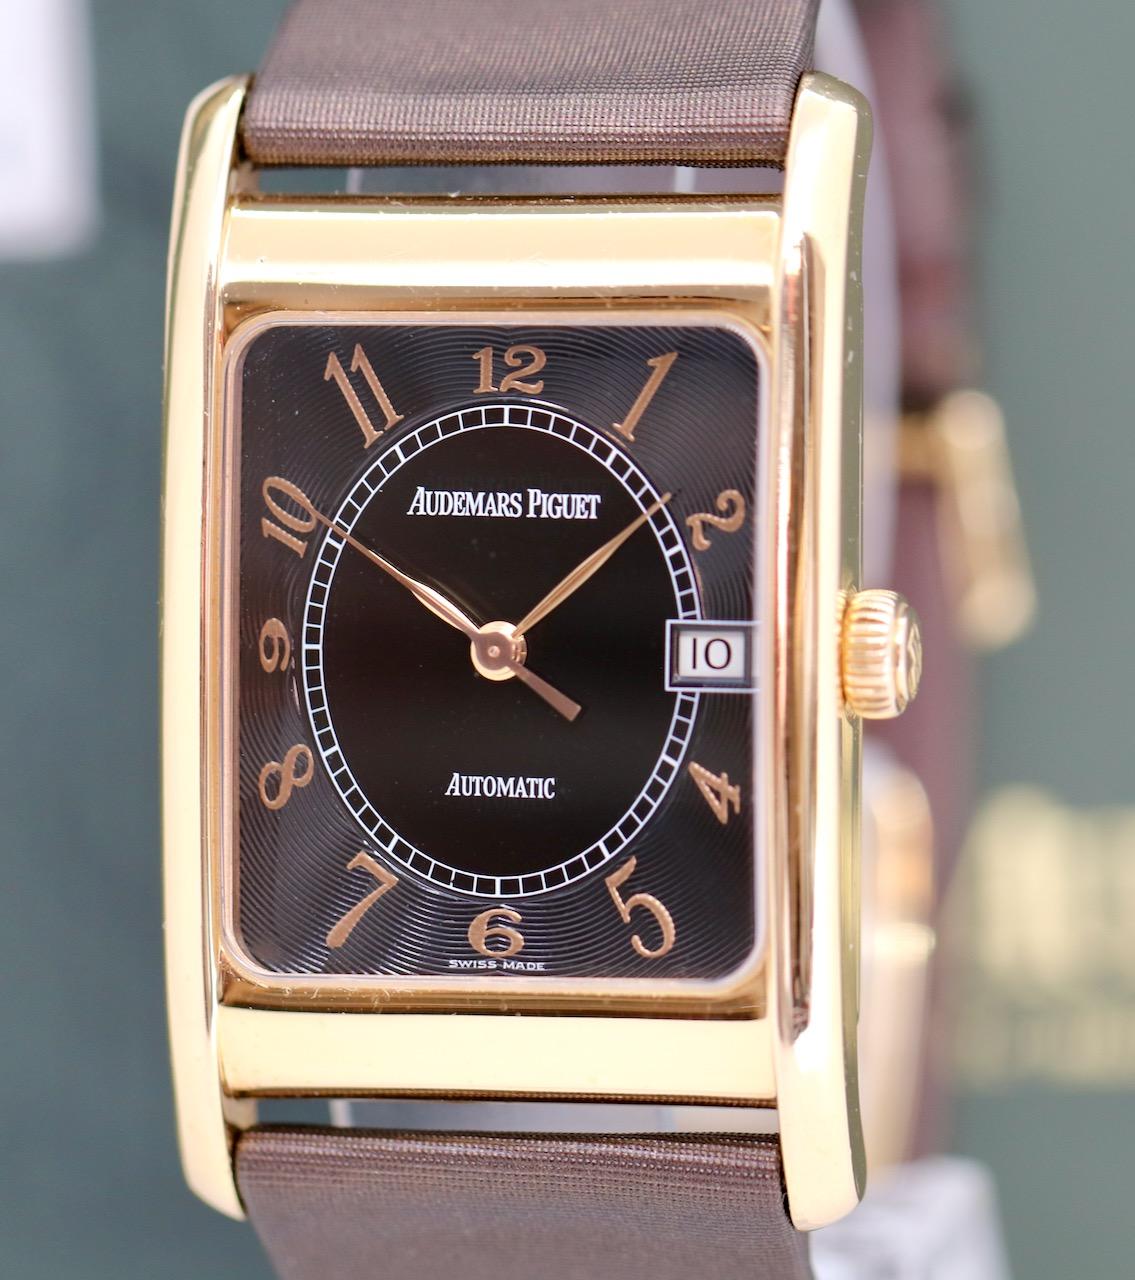 La montre-bracelet d'Audemars Piguet présentée ici est l'incarnation du luxe et de l'art horloger le plus raffiné. Le boîtier et la boucle déployante, tous deux en or rose 18 carats, confèrent à la montre un éclat chaleureux et élégant qui attire